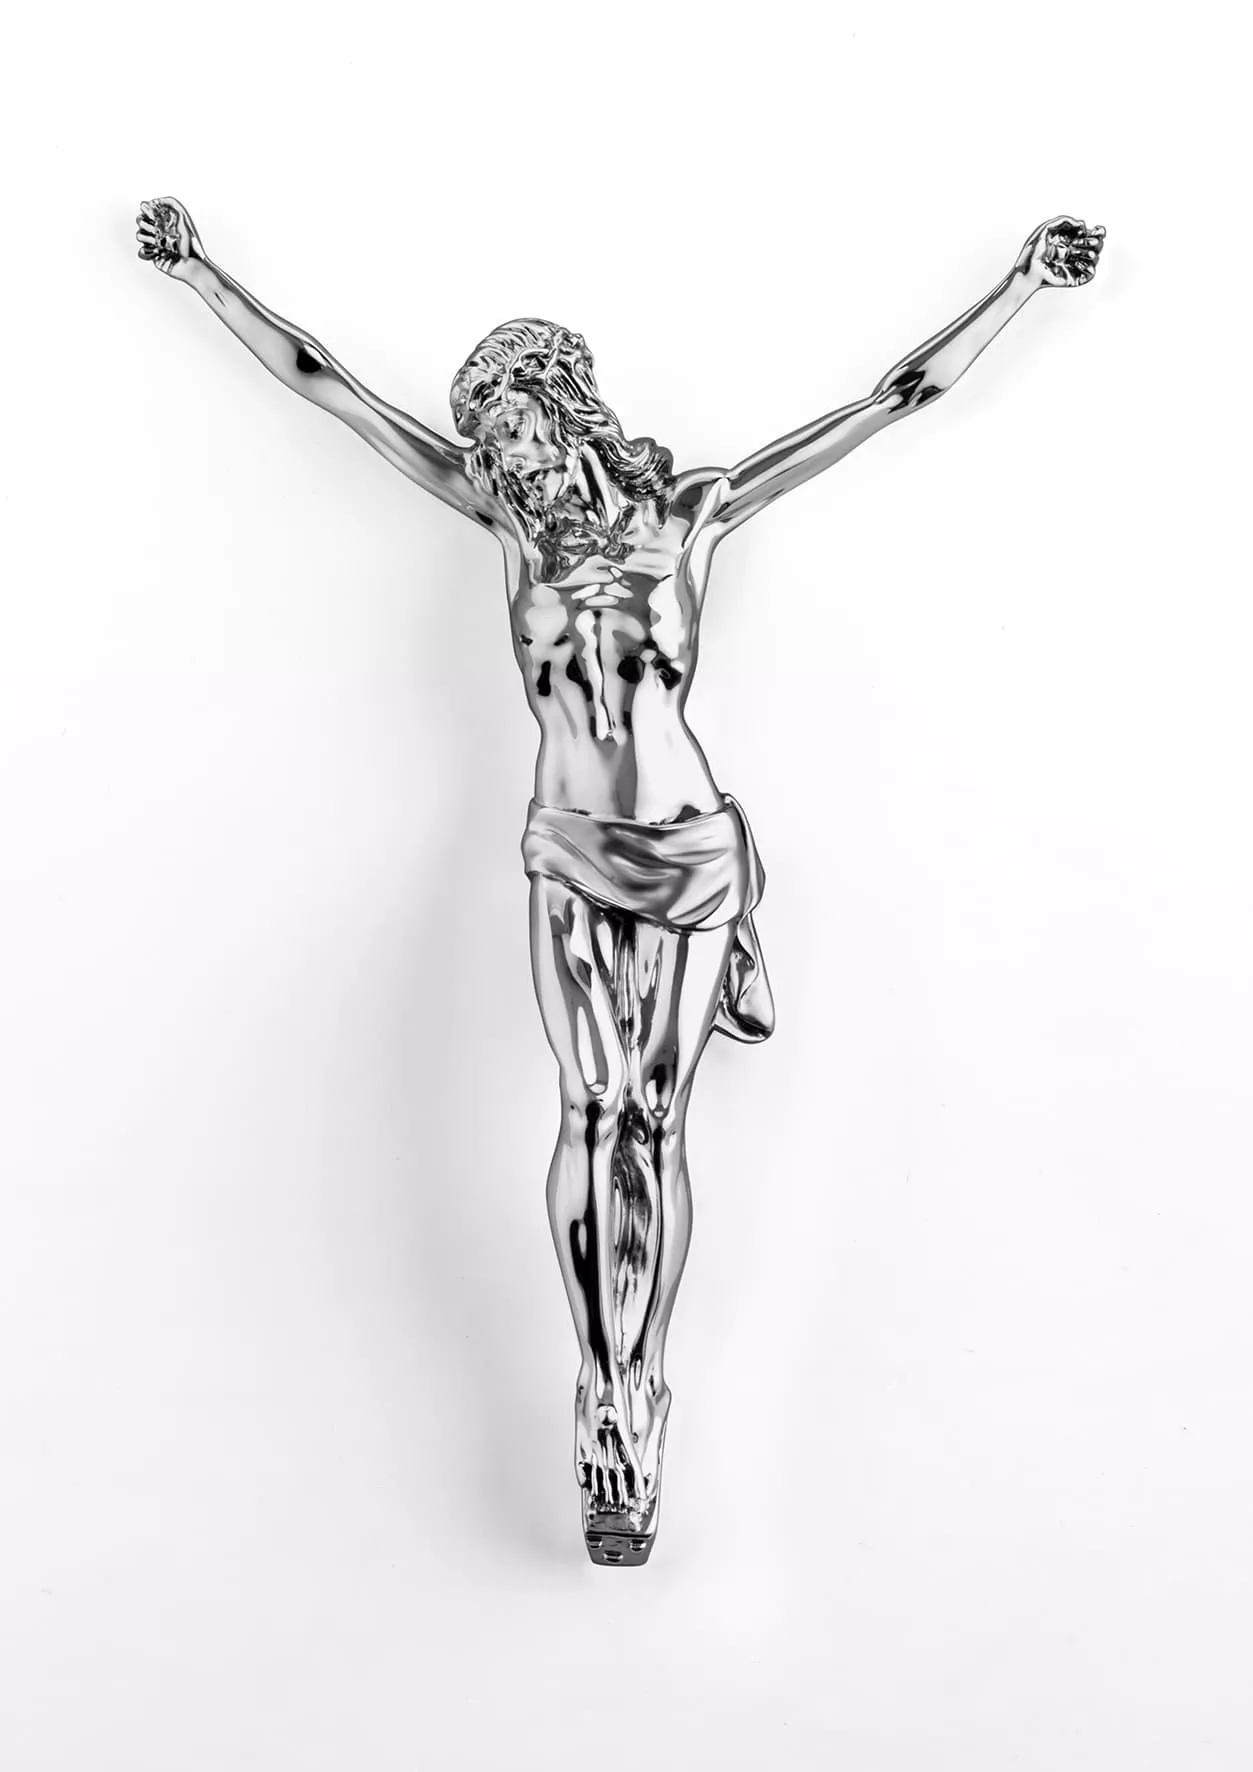 MAZZOLA LUCE Crocifisso Cristo da Parete 15x17cm Senza Croce Design Moderno marmorino Colore Argento Lucido 